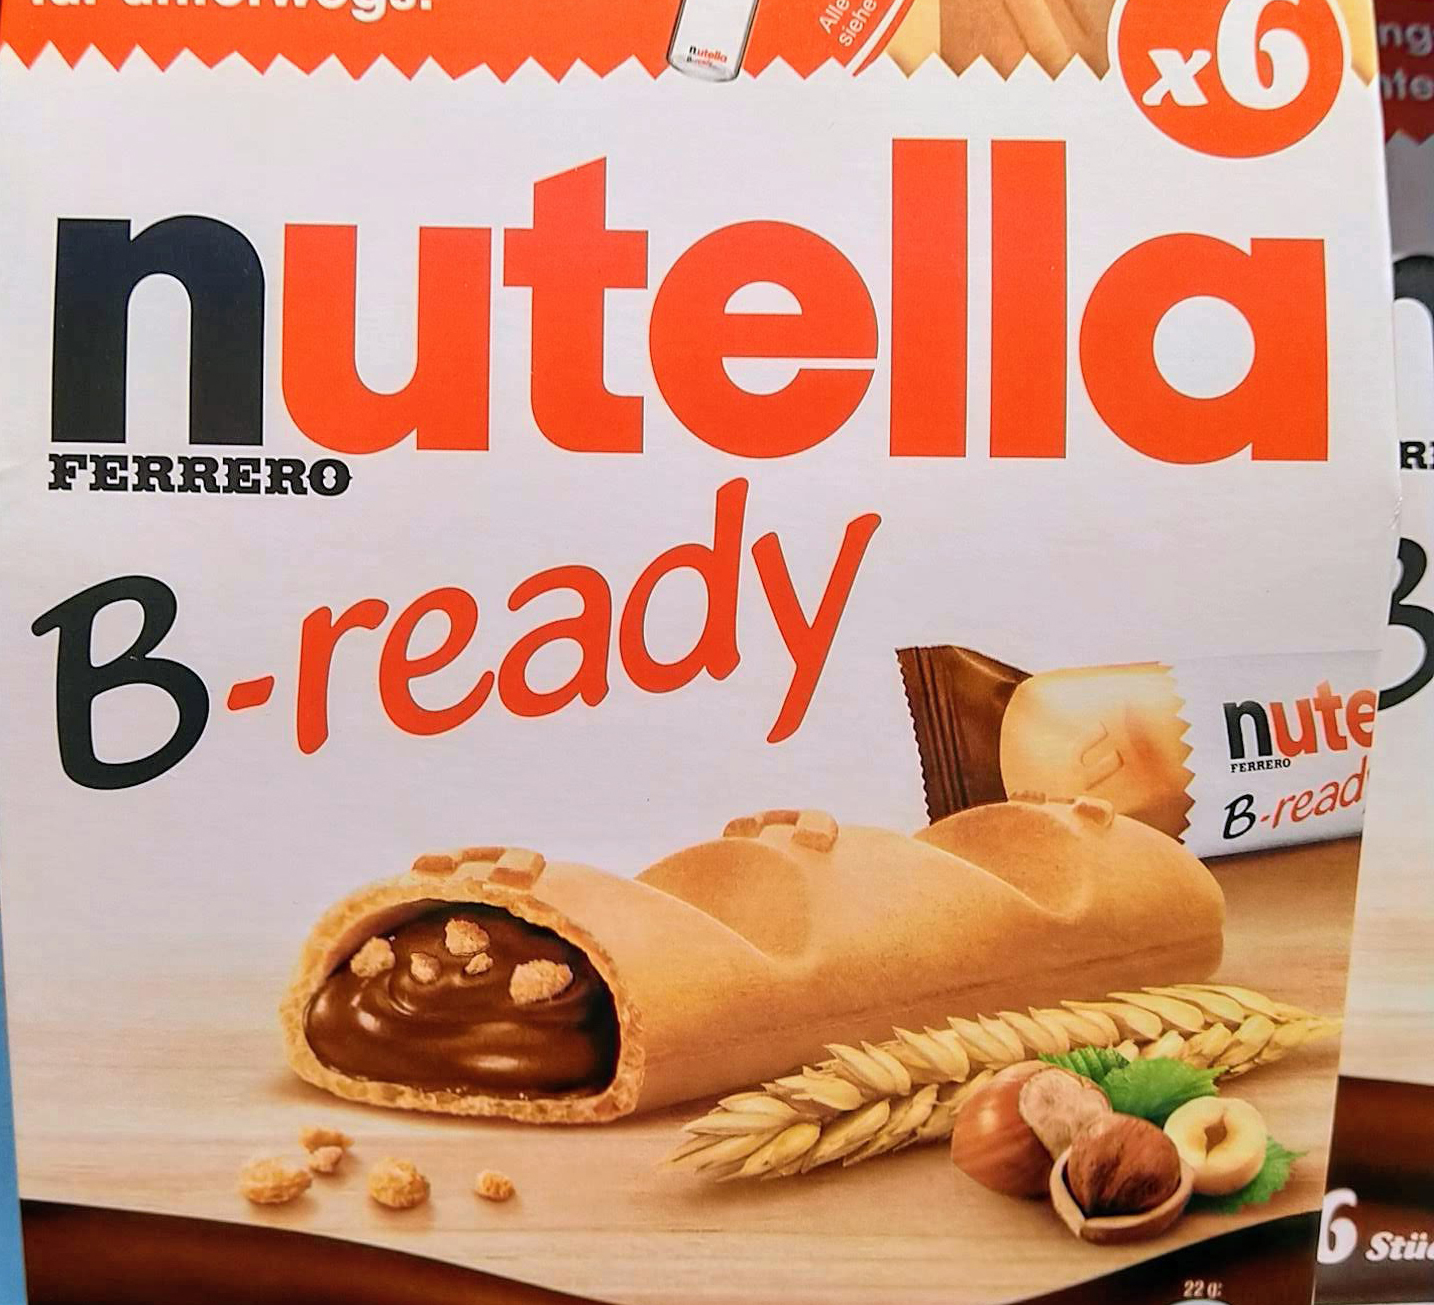 60 Jahre Nutella Gewinnspiel - Jetzt Kassenbon hochladen